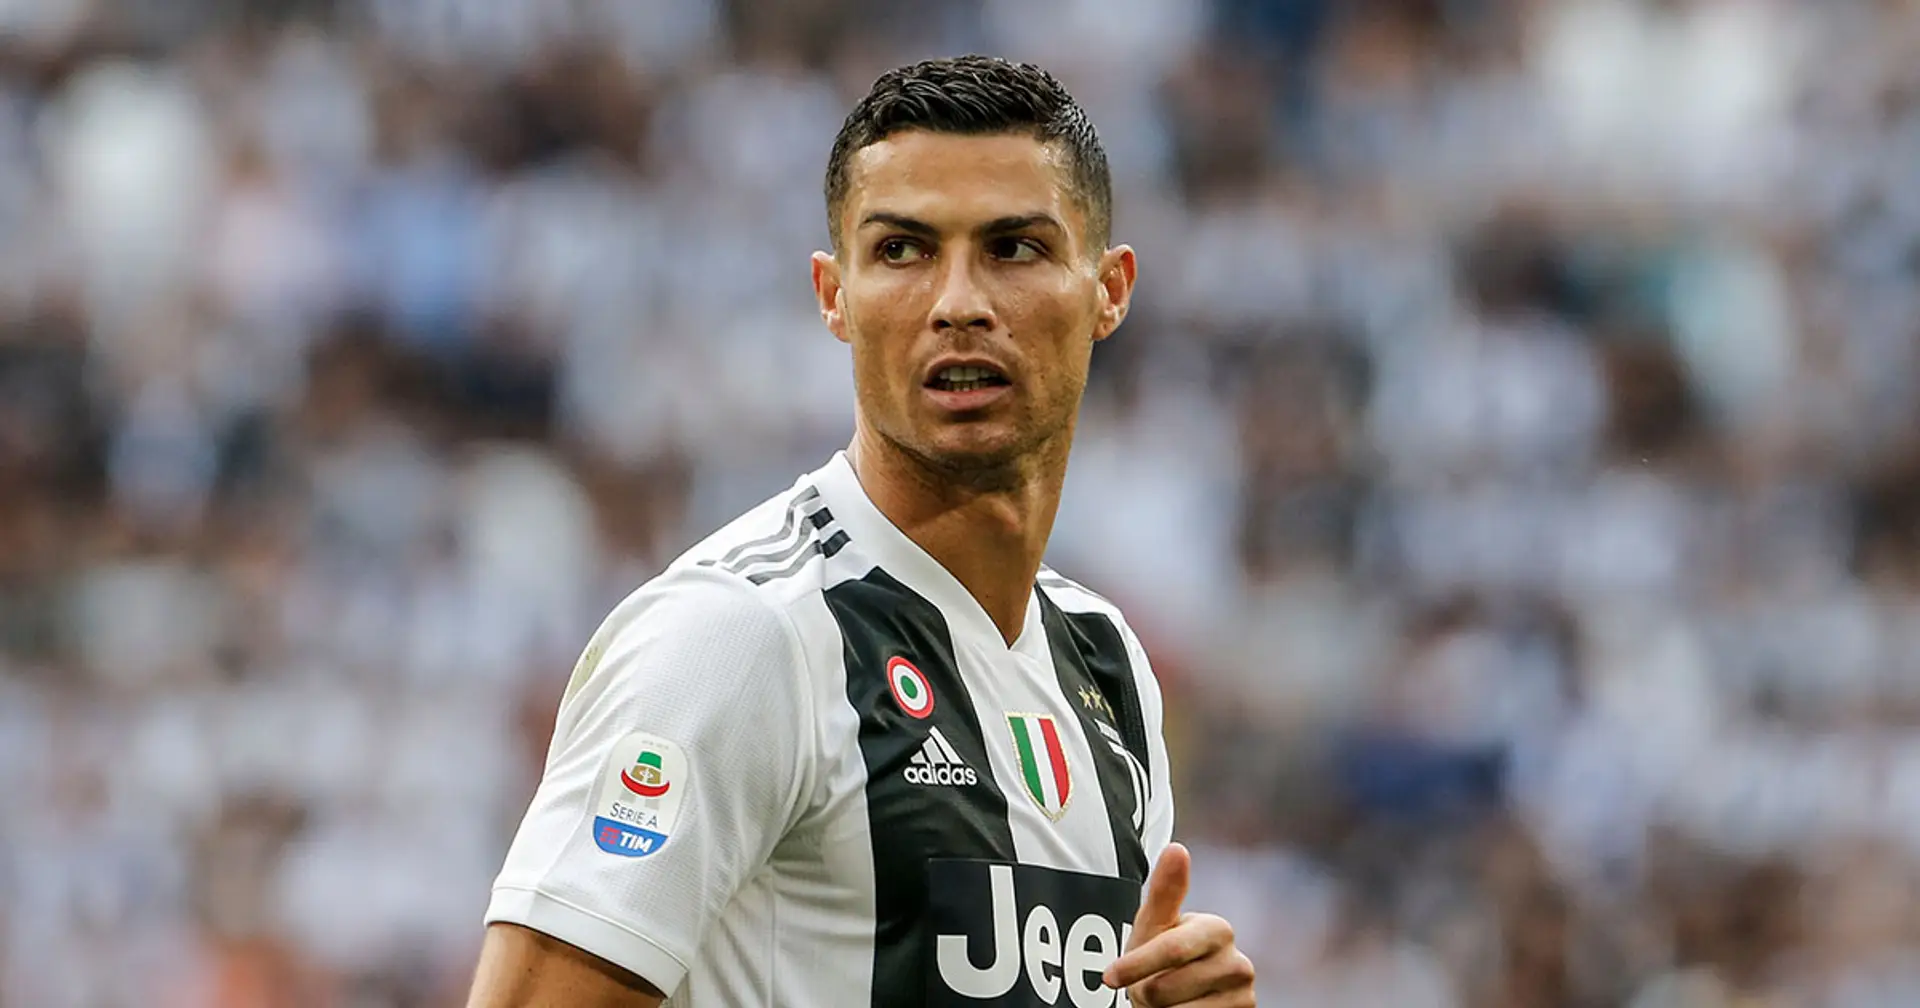 La "carta Ronaldo" non si trova: l'ex Juventus può essere convocato dalla Procura per fare chiarezza